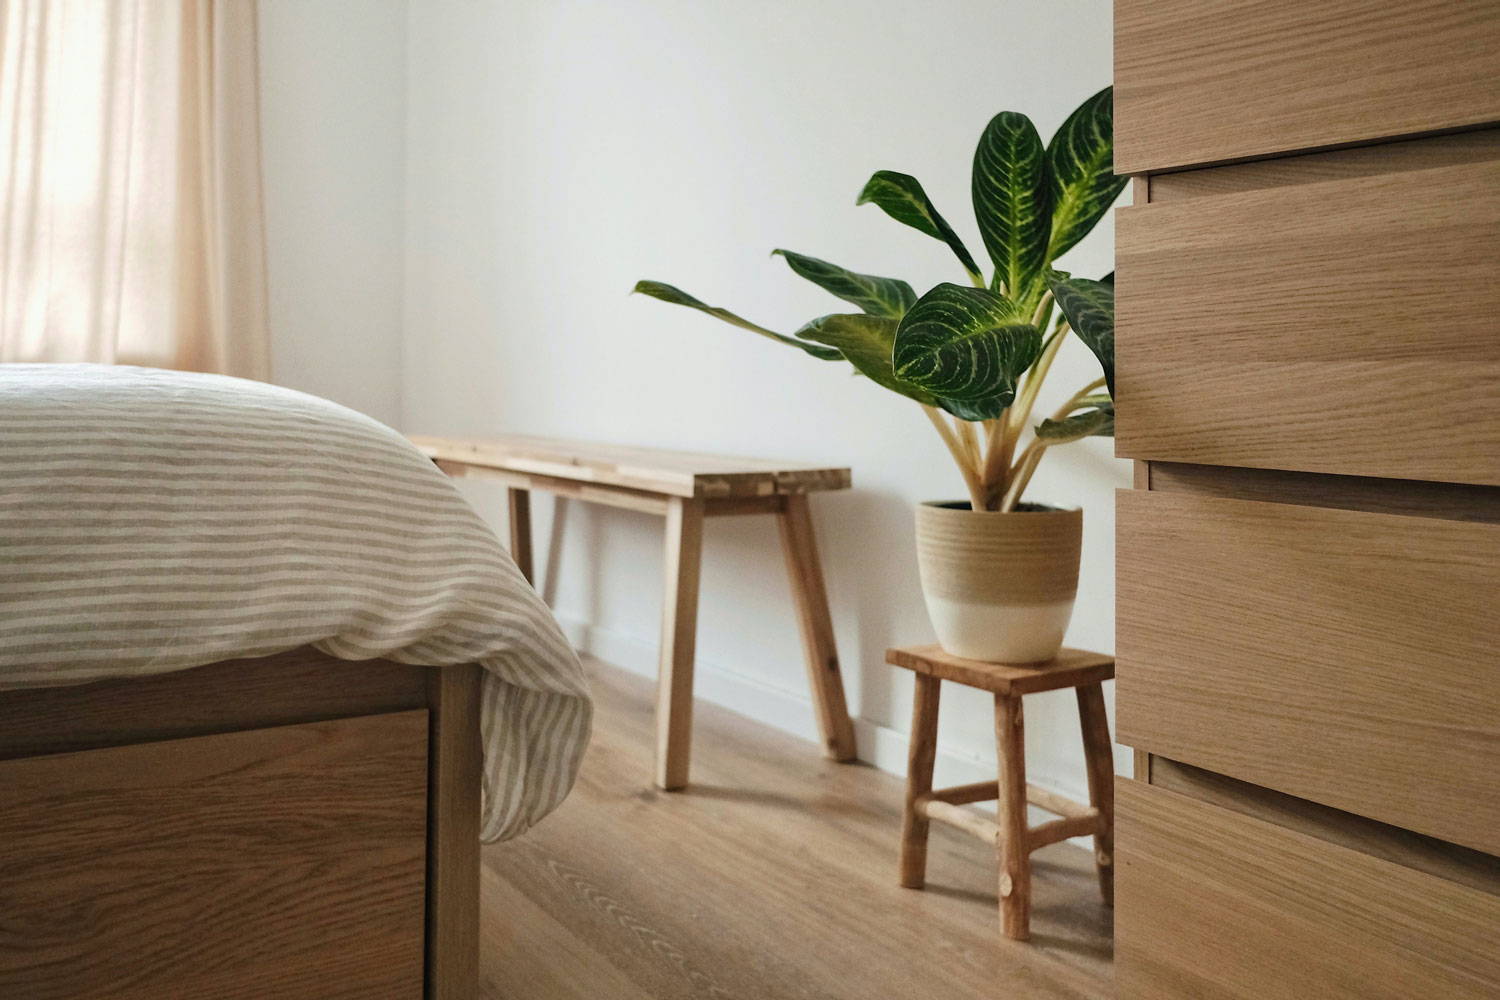 Schlafzimmer minimalistisch eingerichtet | Metallbude